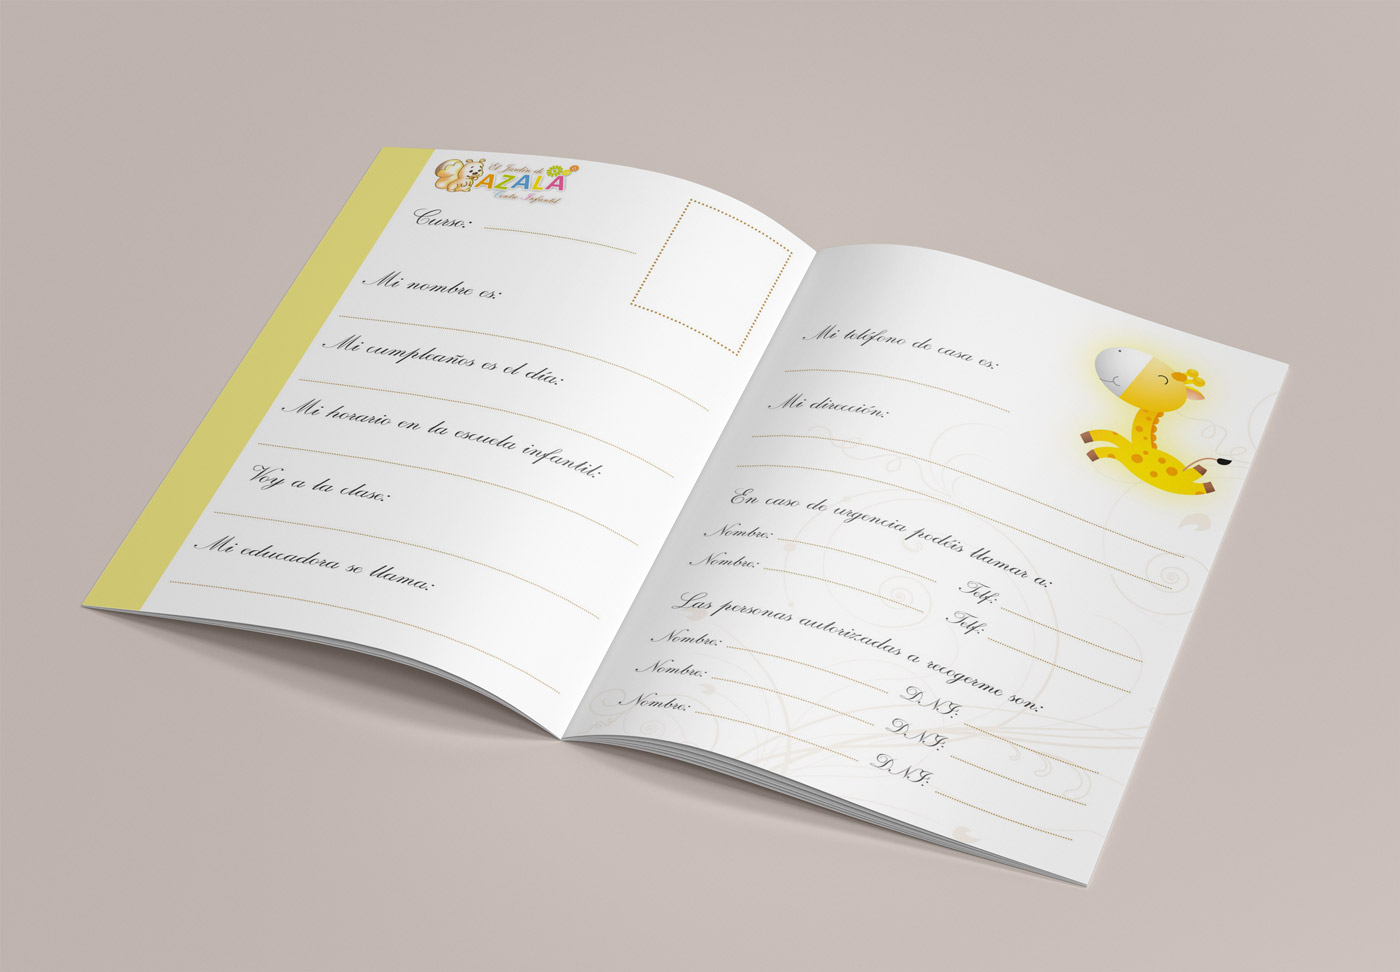 Diseño gráfico y creativo de maquetación de catálogos de viajes para agenda escolar infantil